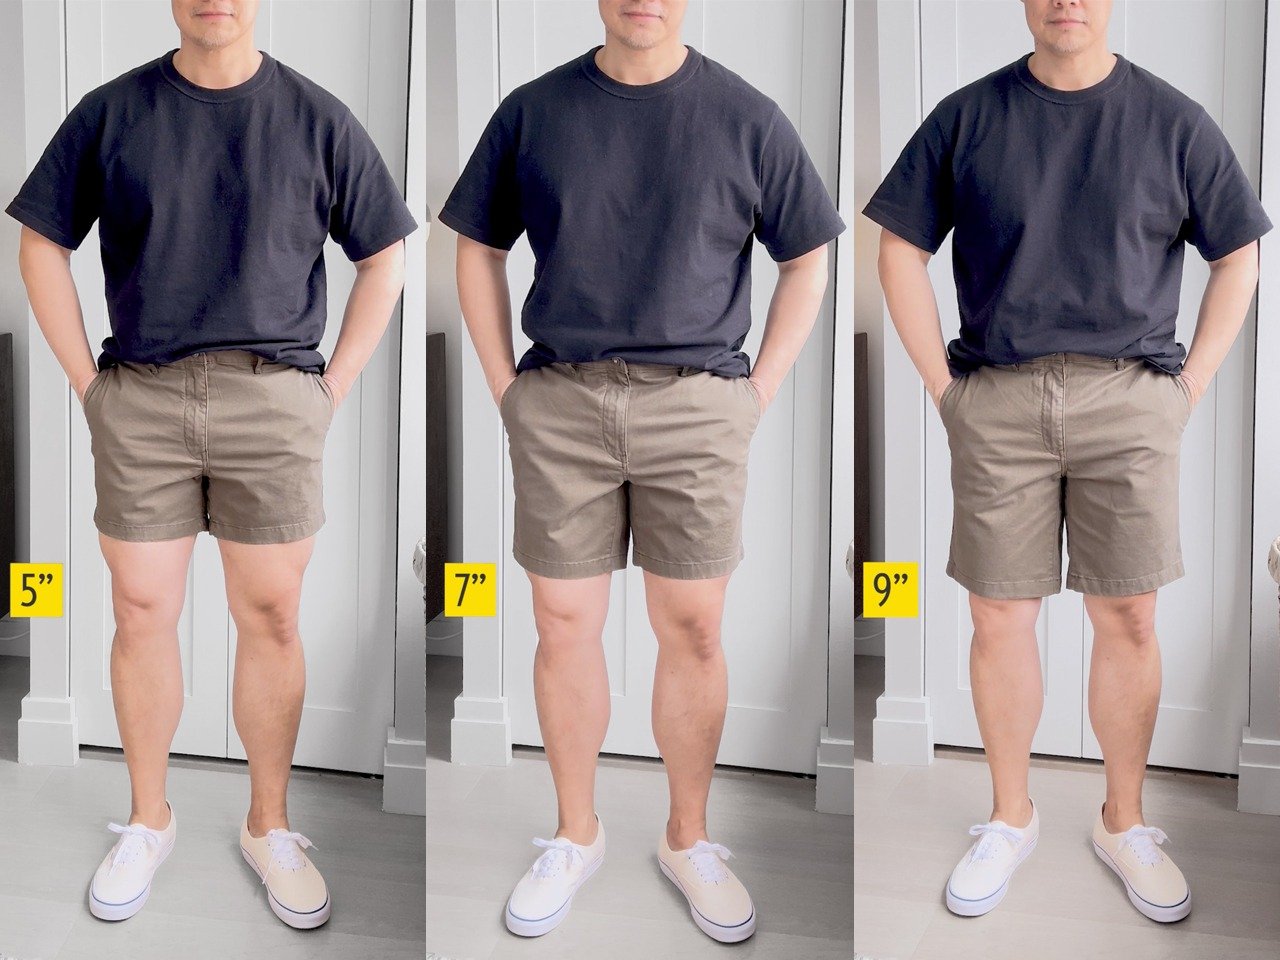 homme portant un short olive de 5, 7 et 9 pouces de longueur pour montrer la différence d'entrejambe